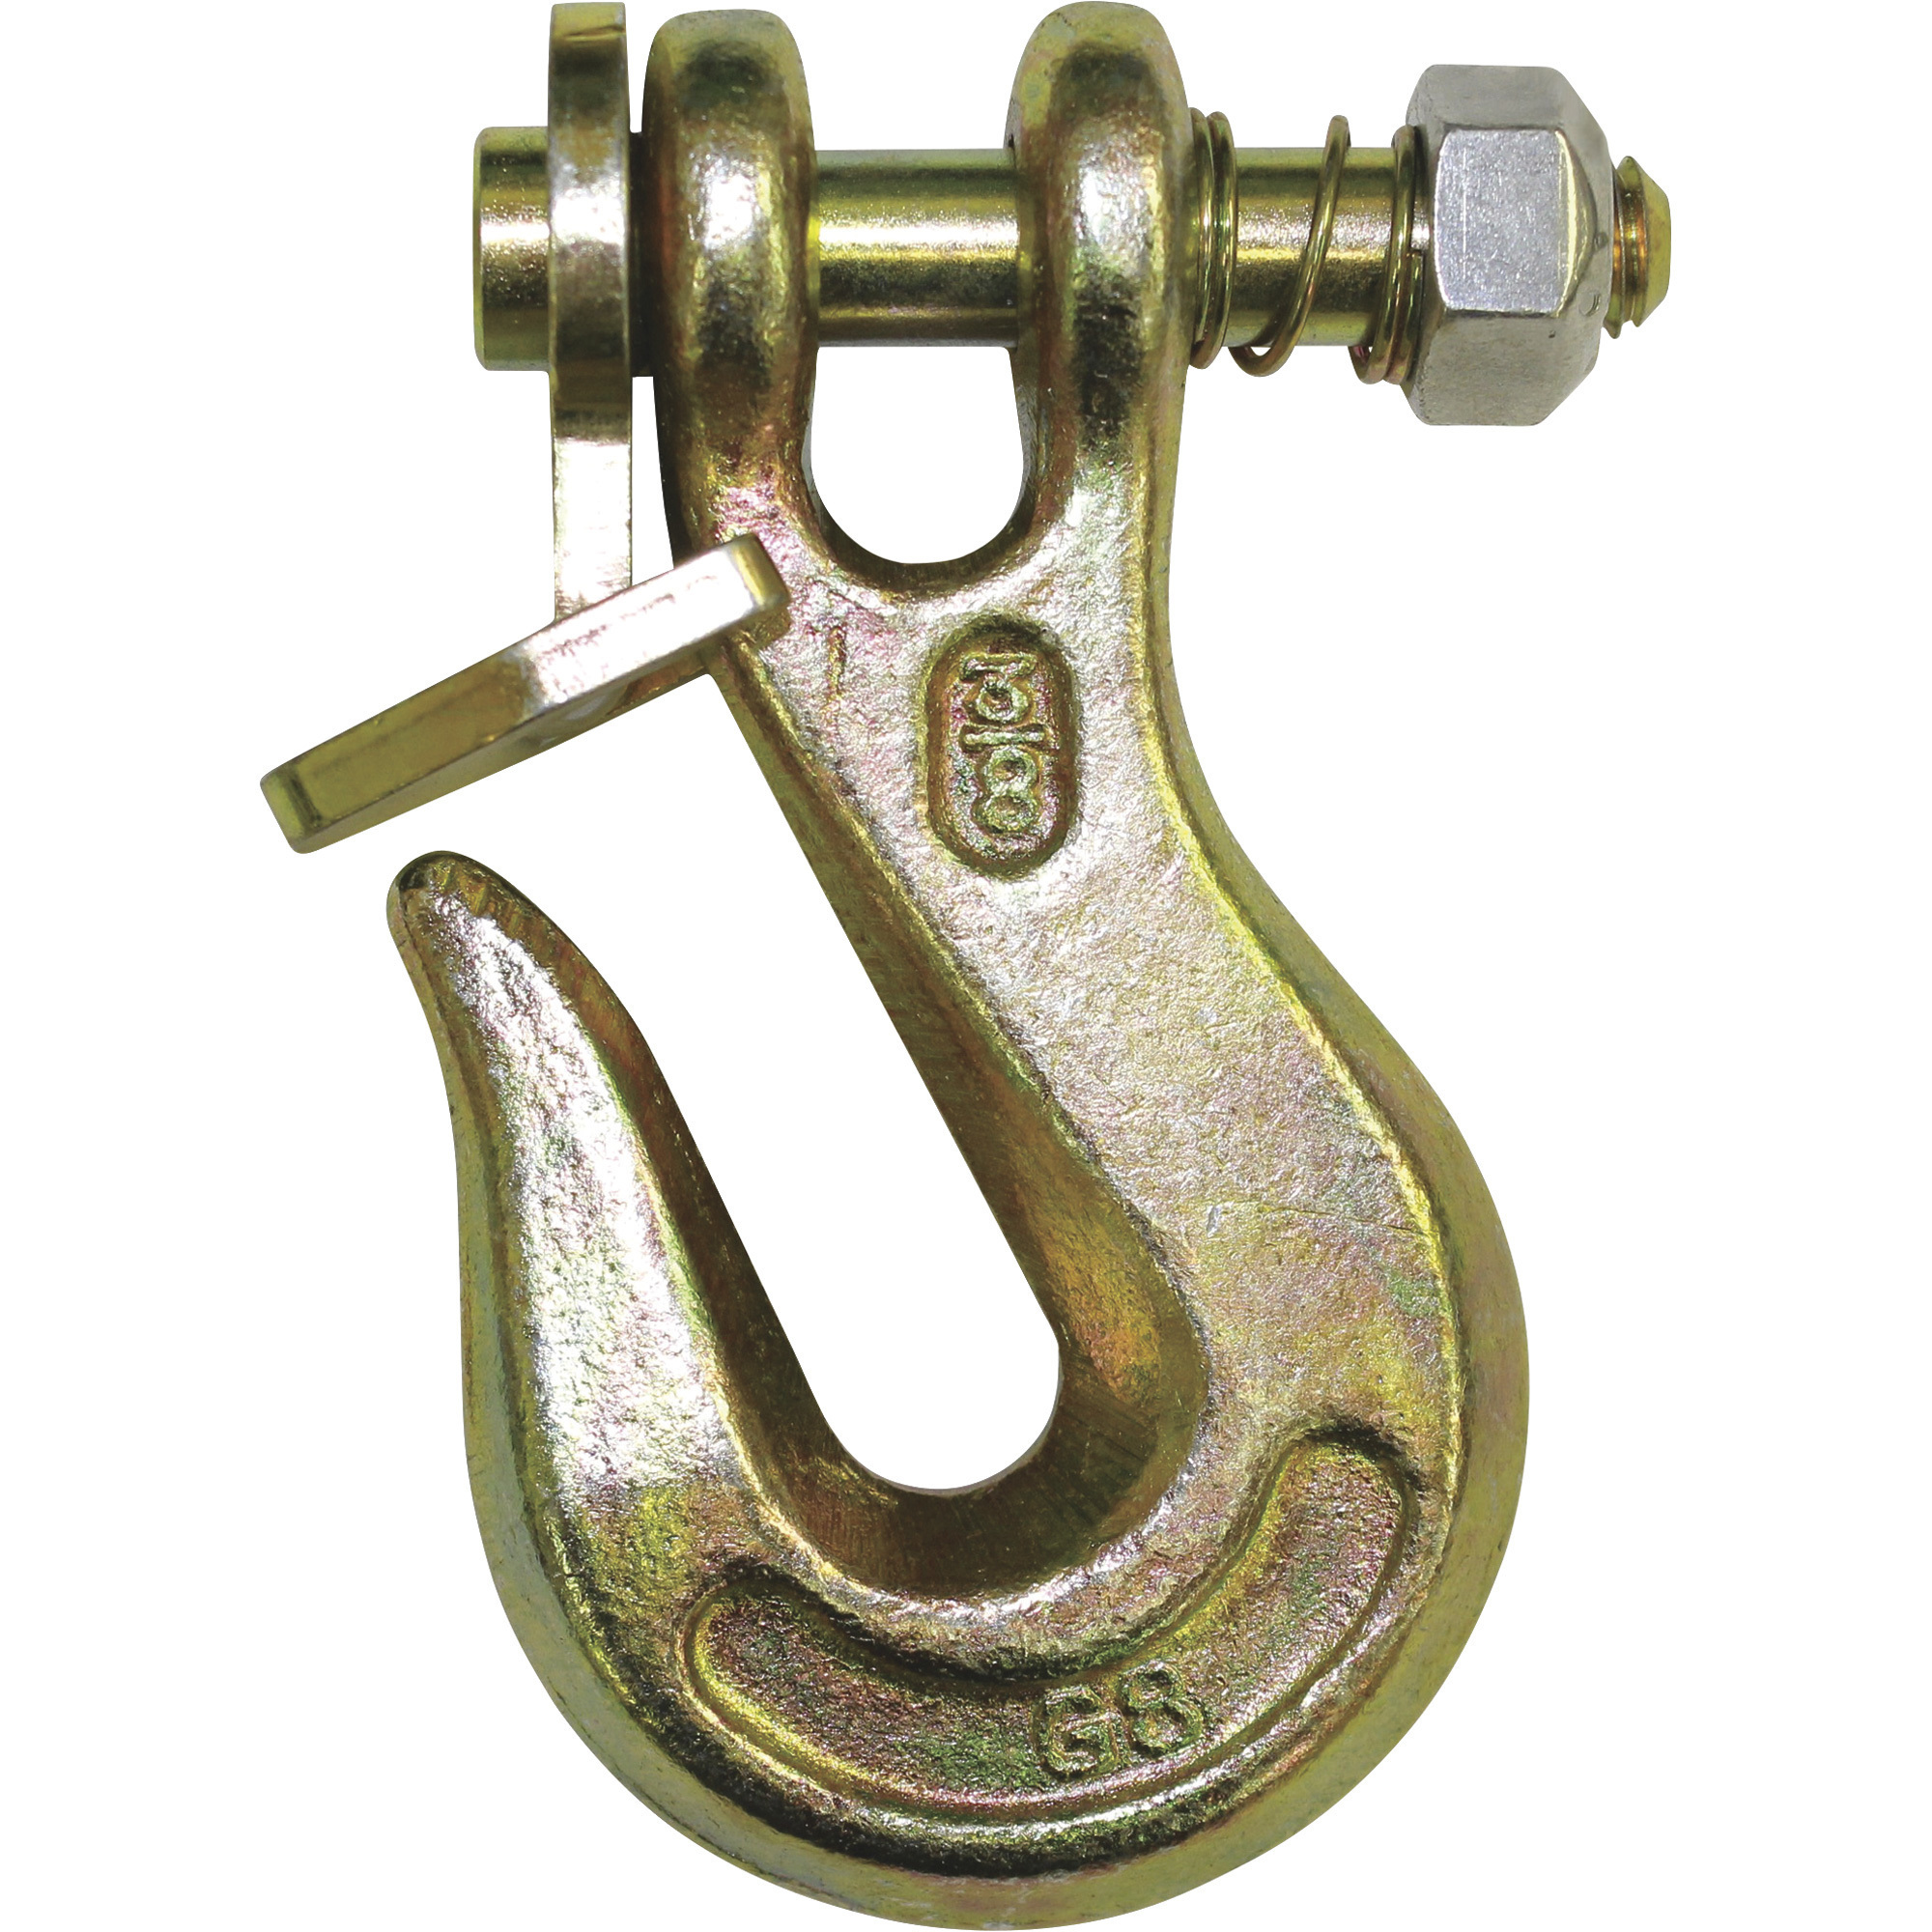 B/A Products Twist Lock Clevis Grab Hook â 1/2Inch, 6Inch L, 12,000-Lb. Capacity, Model G8-200-12